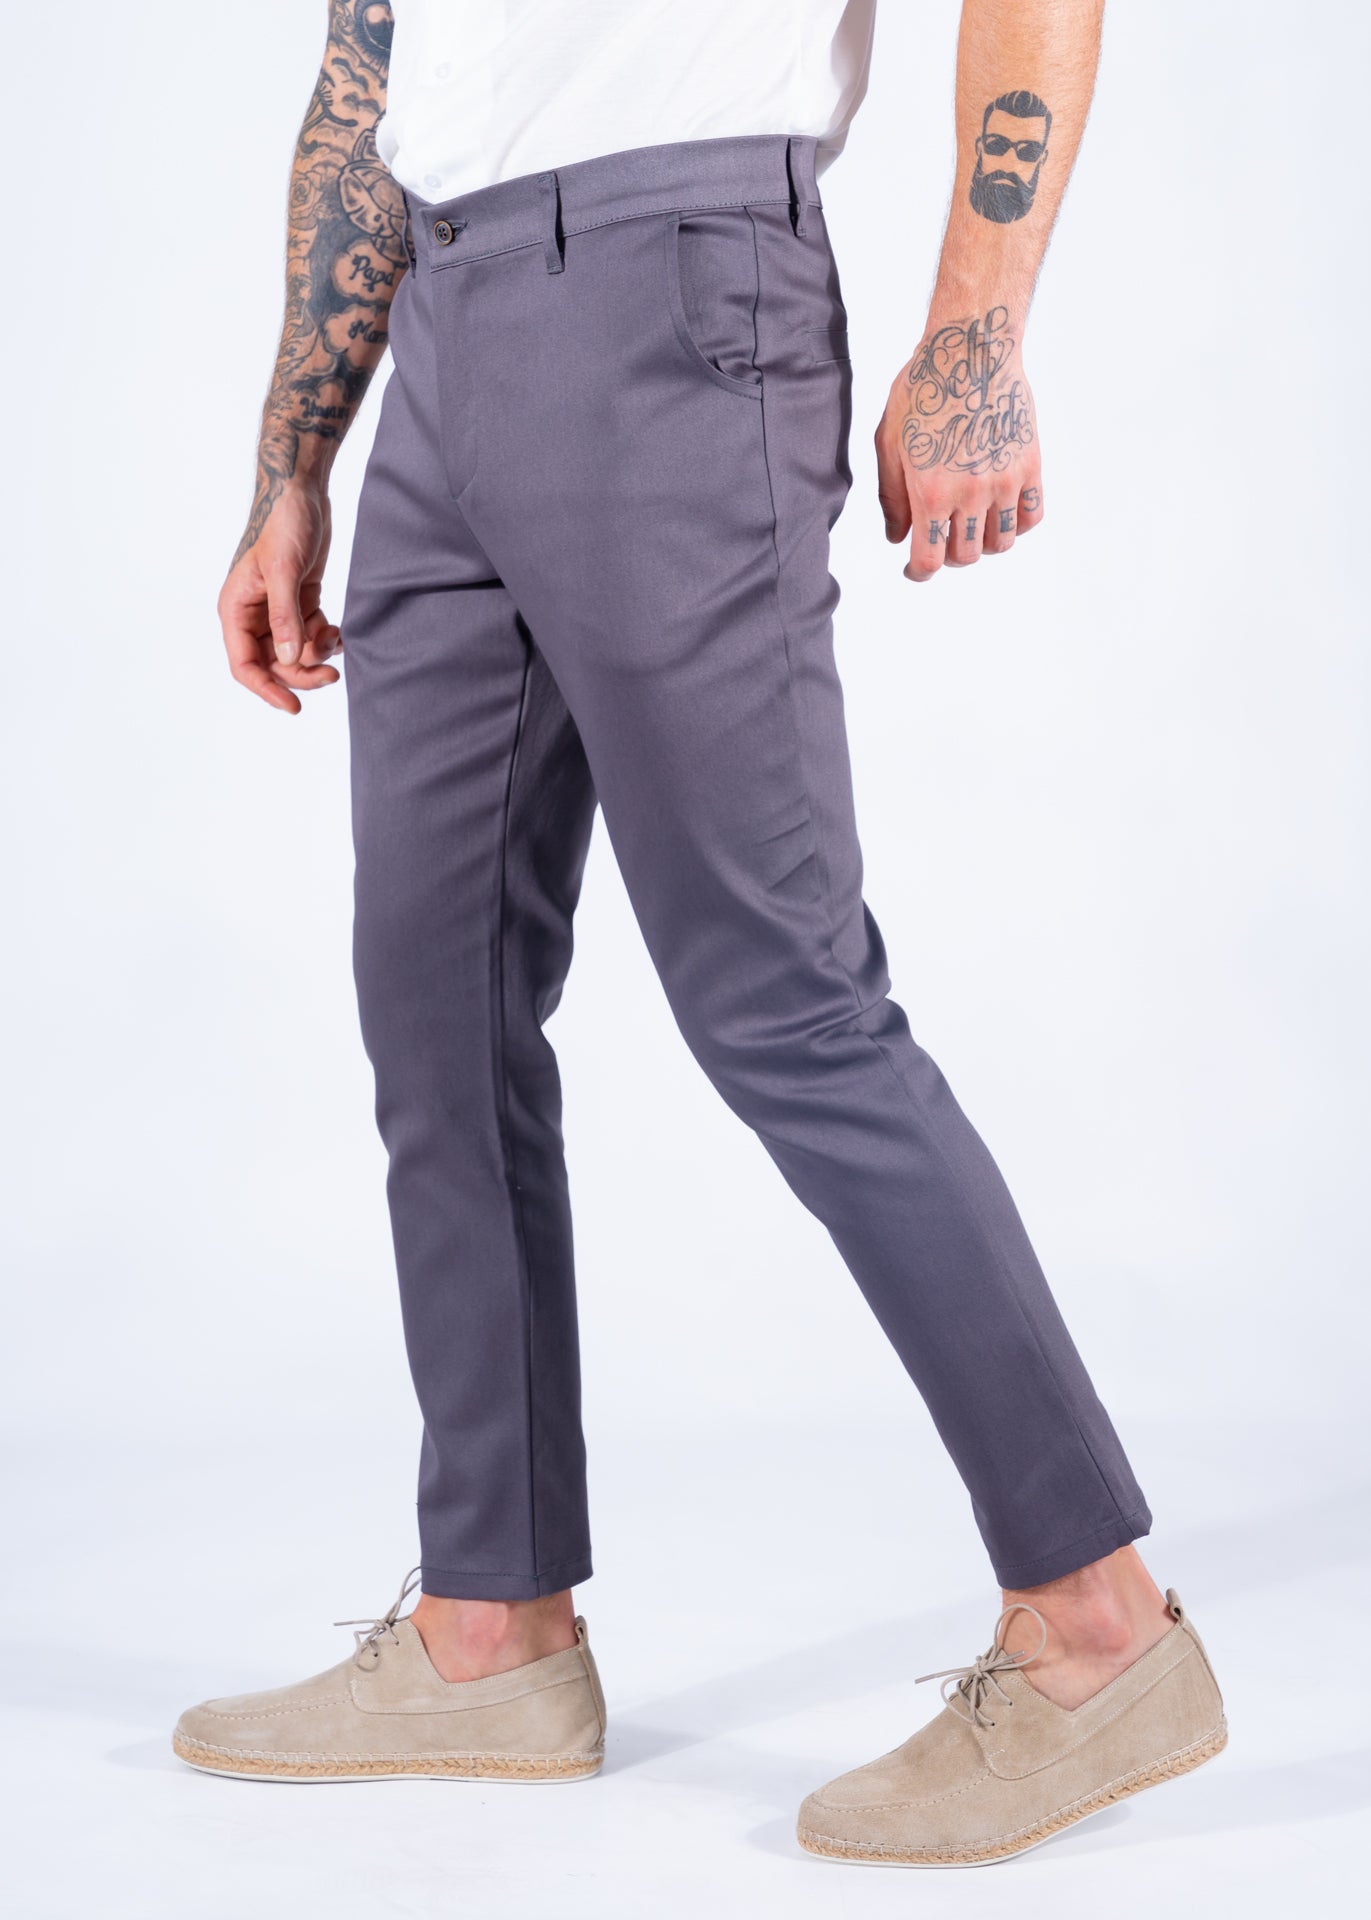 Pantalon Frankie slim fit grey